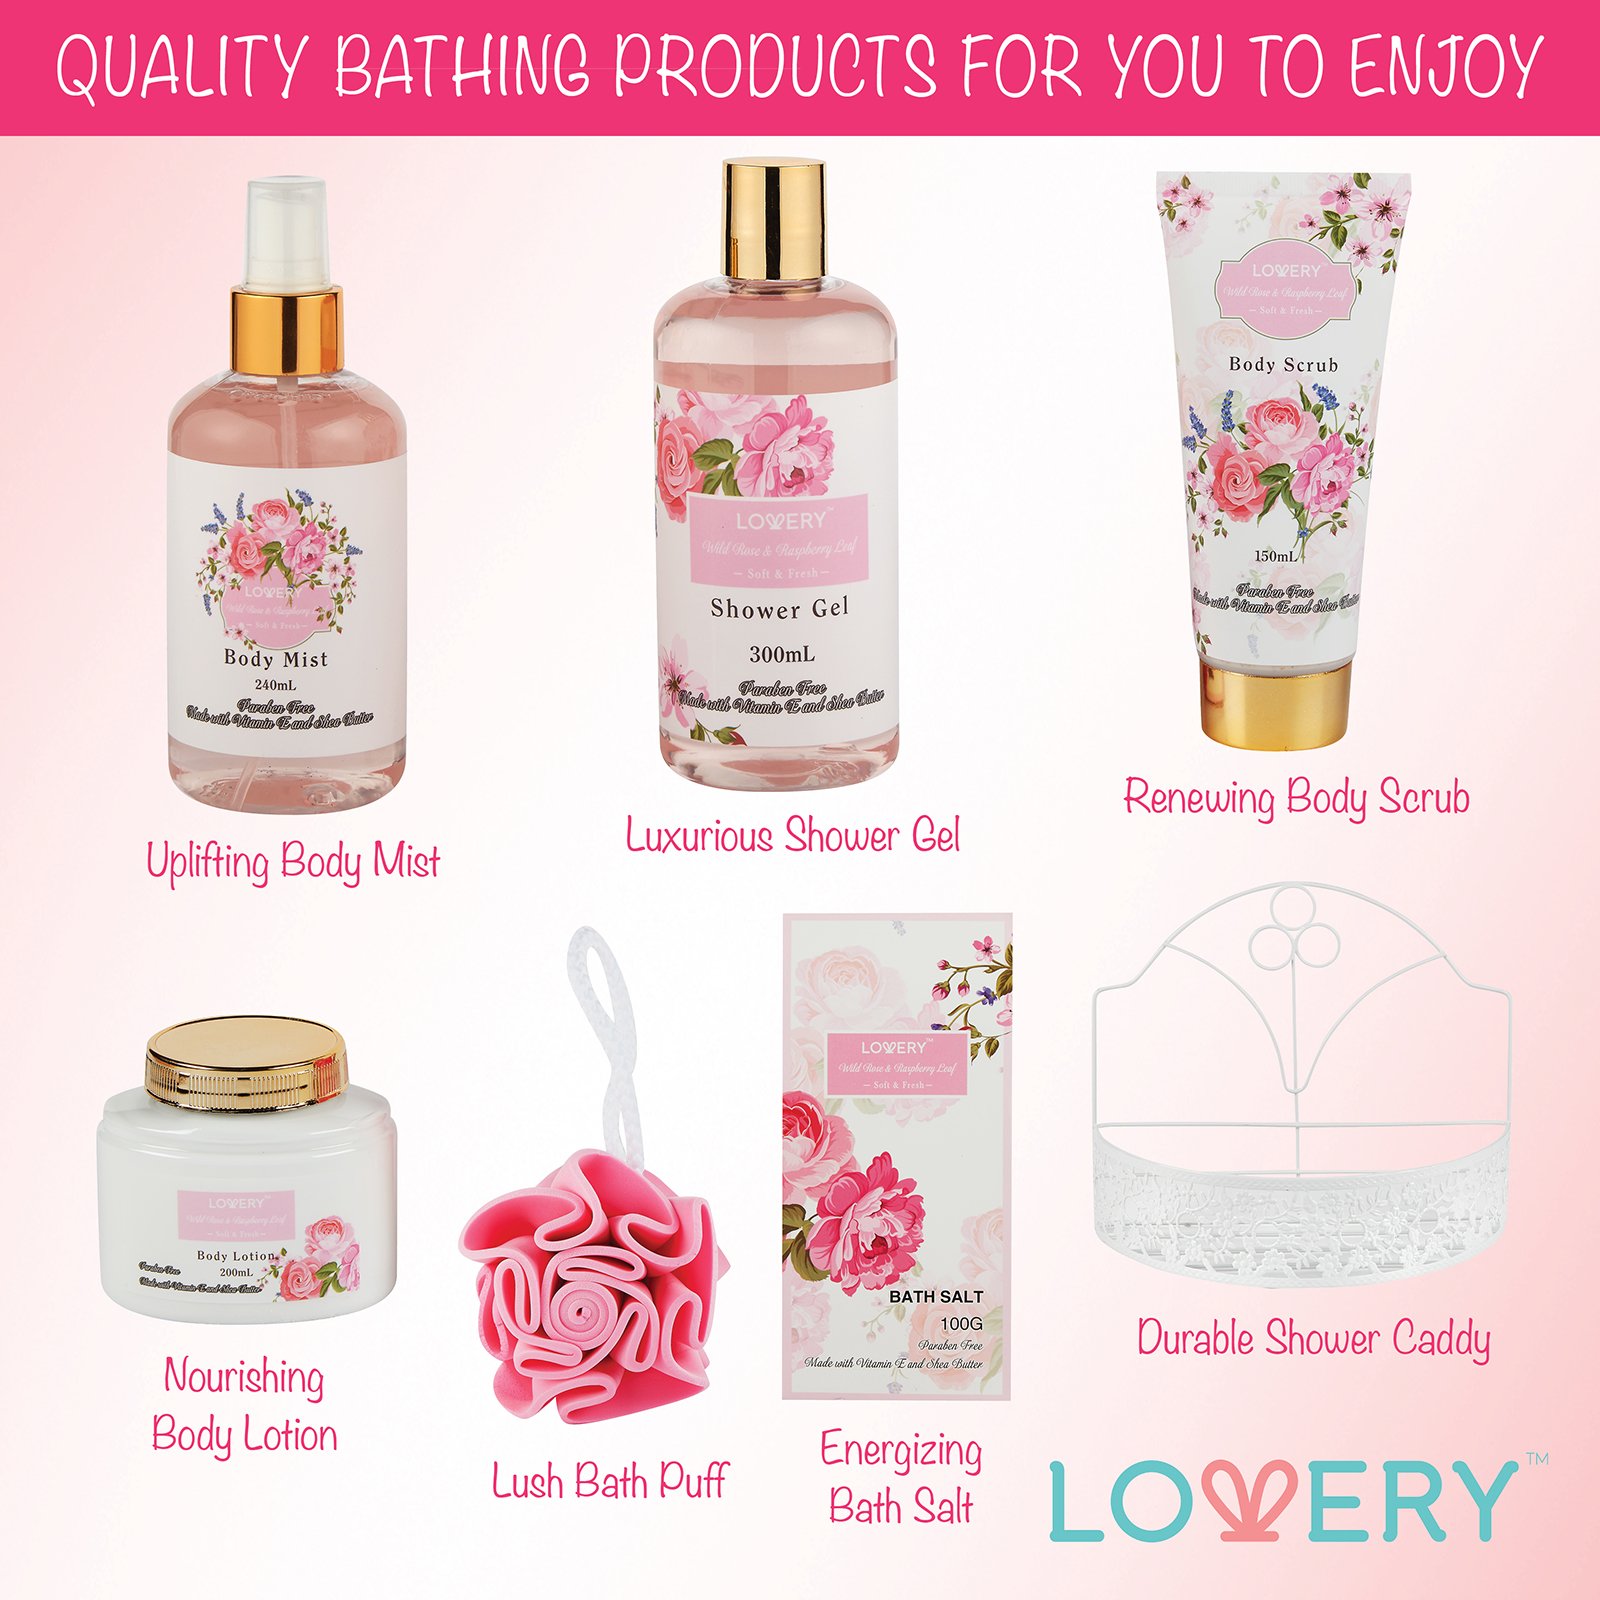 Home Spa Gift Basket - Wild Rose & Raspberry Leaf Scent - 7pc Bath & Body Set for Men and Women - Shower Gel, Body Lotion, Body Scrub, Bath Salt, Body Mist, Bath Puff & Shower Caddy